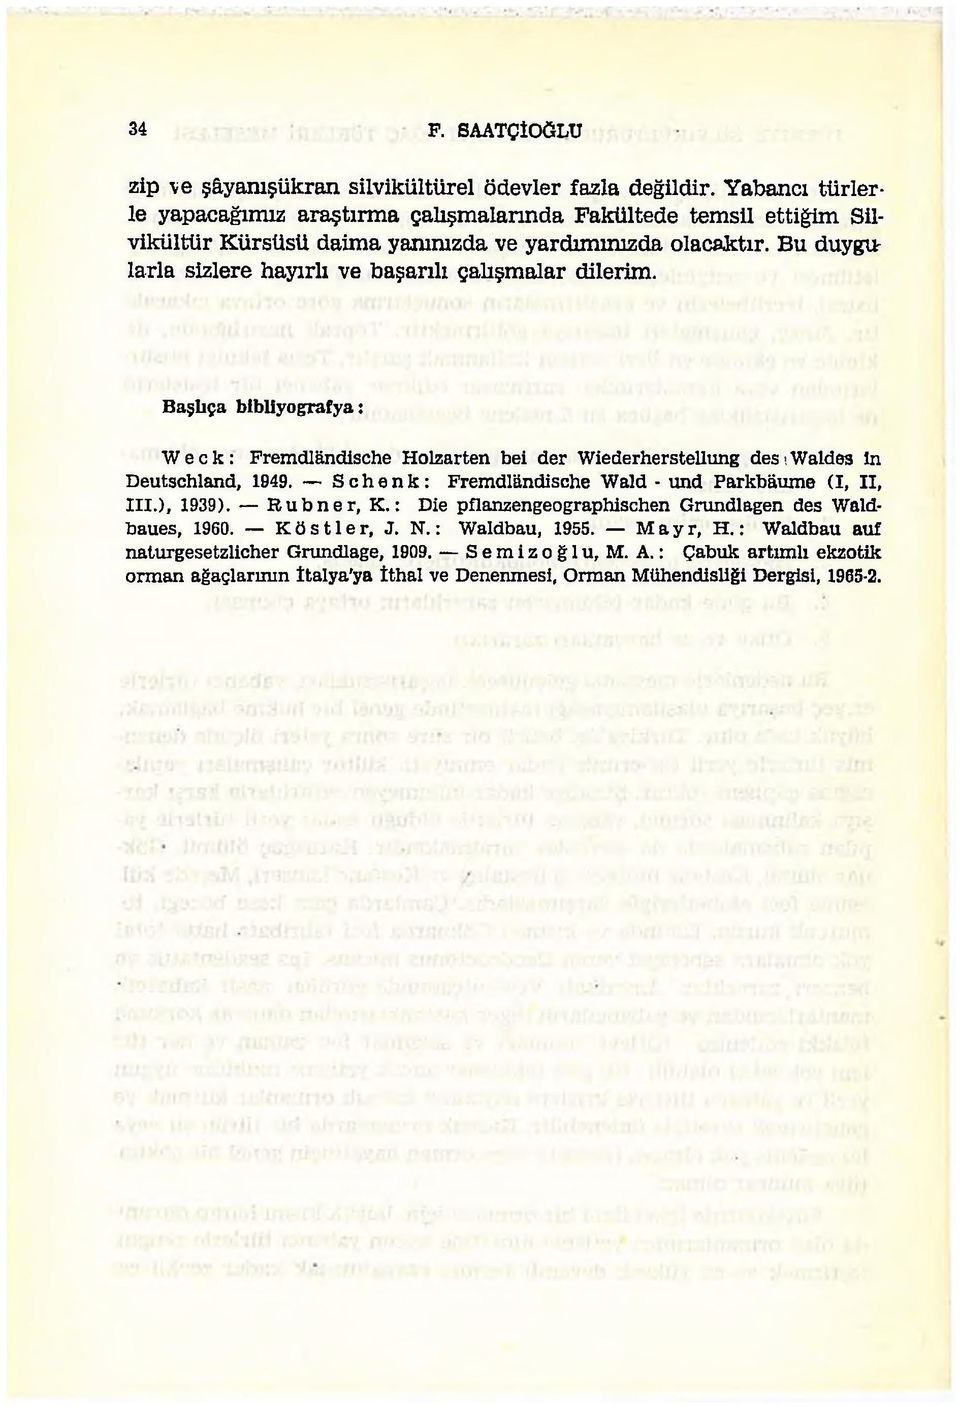 Bu duygtt larla sizlere hayırlı ve başarılı çalışmalar dilerim. Başlıça bibliyografya: W e c k : Fremdlândische Holzarten bei der Wiederherstellung des ı Walde3 in Deutschland, 1949.